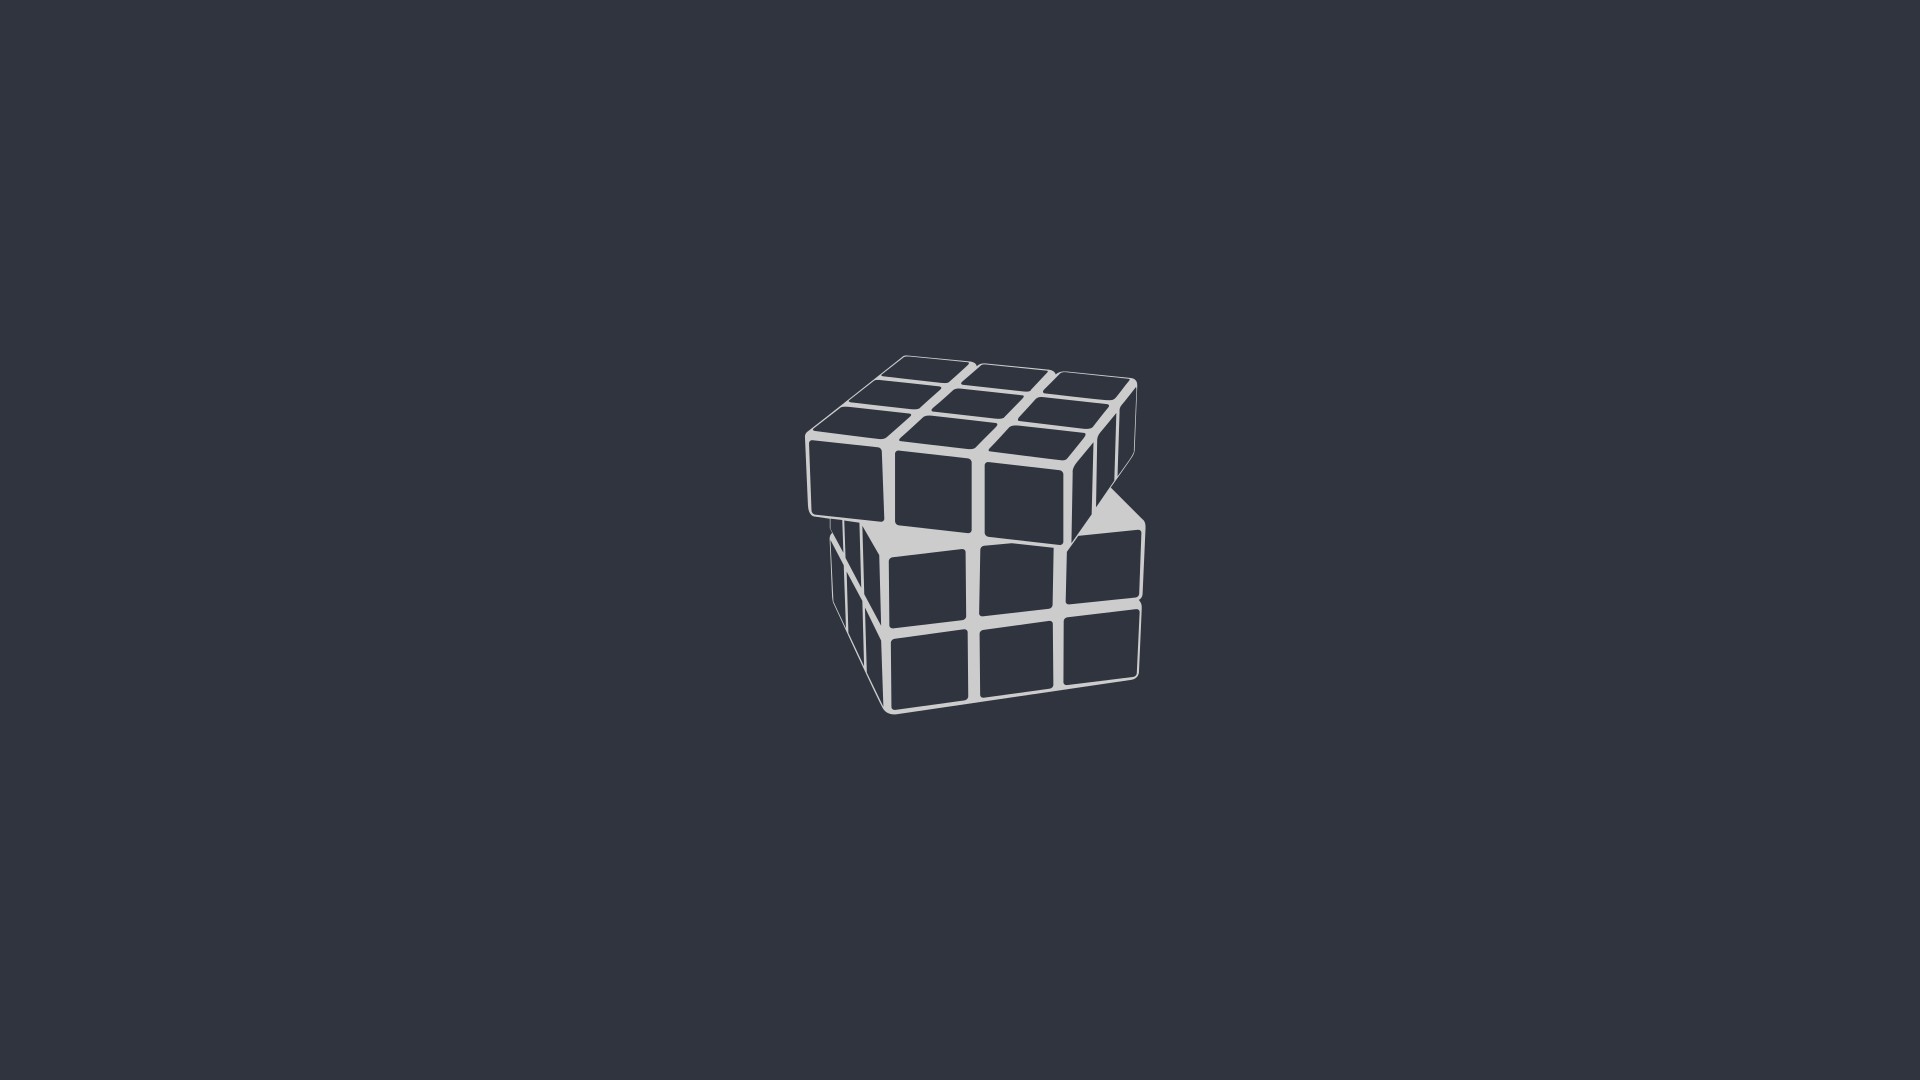 Rubiks Cube, Minimalism, Digital art Wallpaper